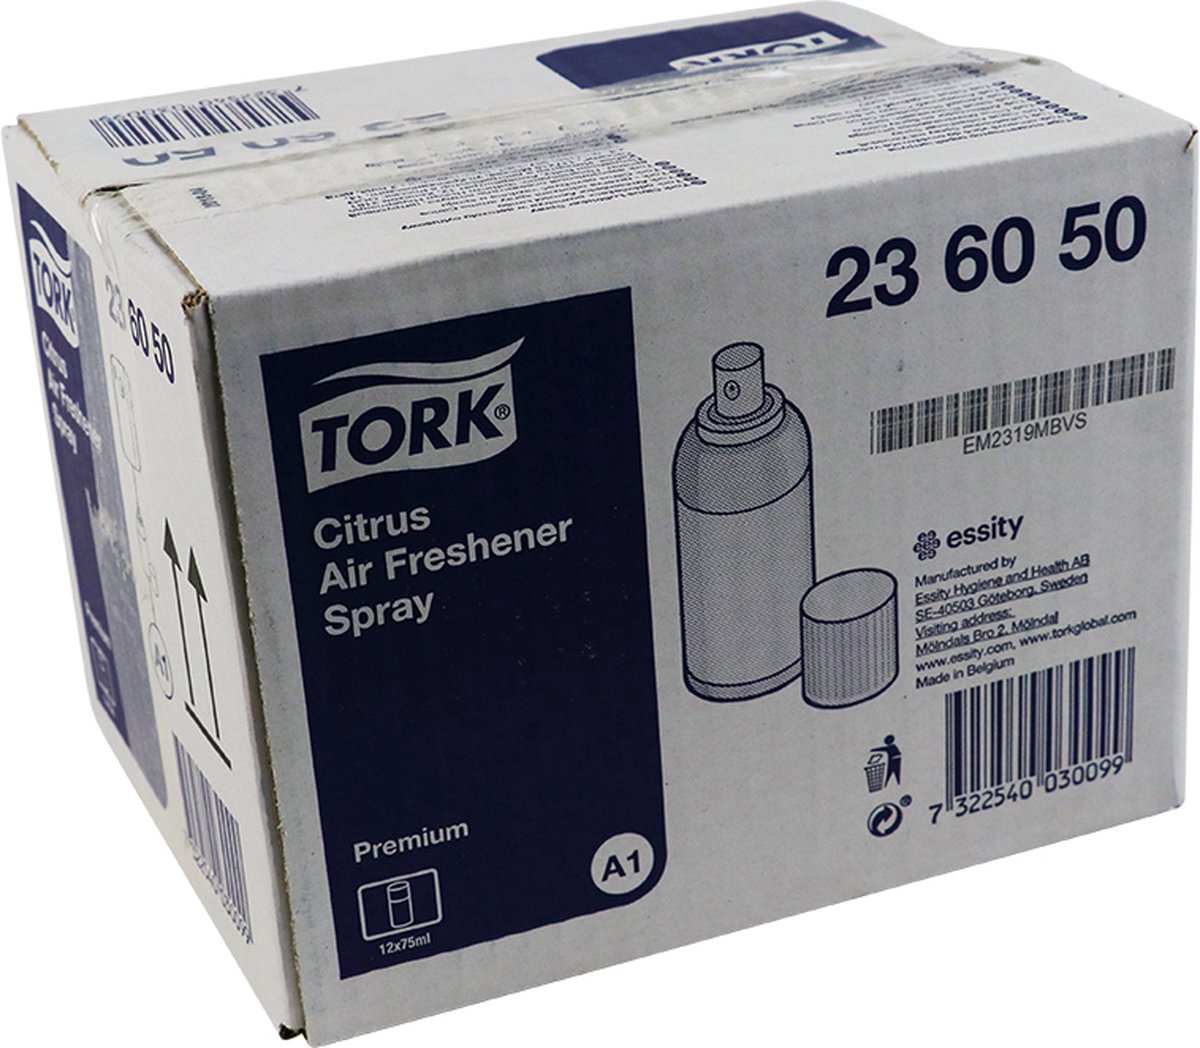 Voordeelverpakking 4 X Tork Luchtverfrisser Spray met Citrusgeur A1, aerosol, 12x75ml (236050)